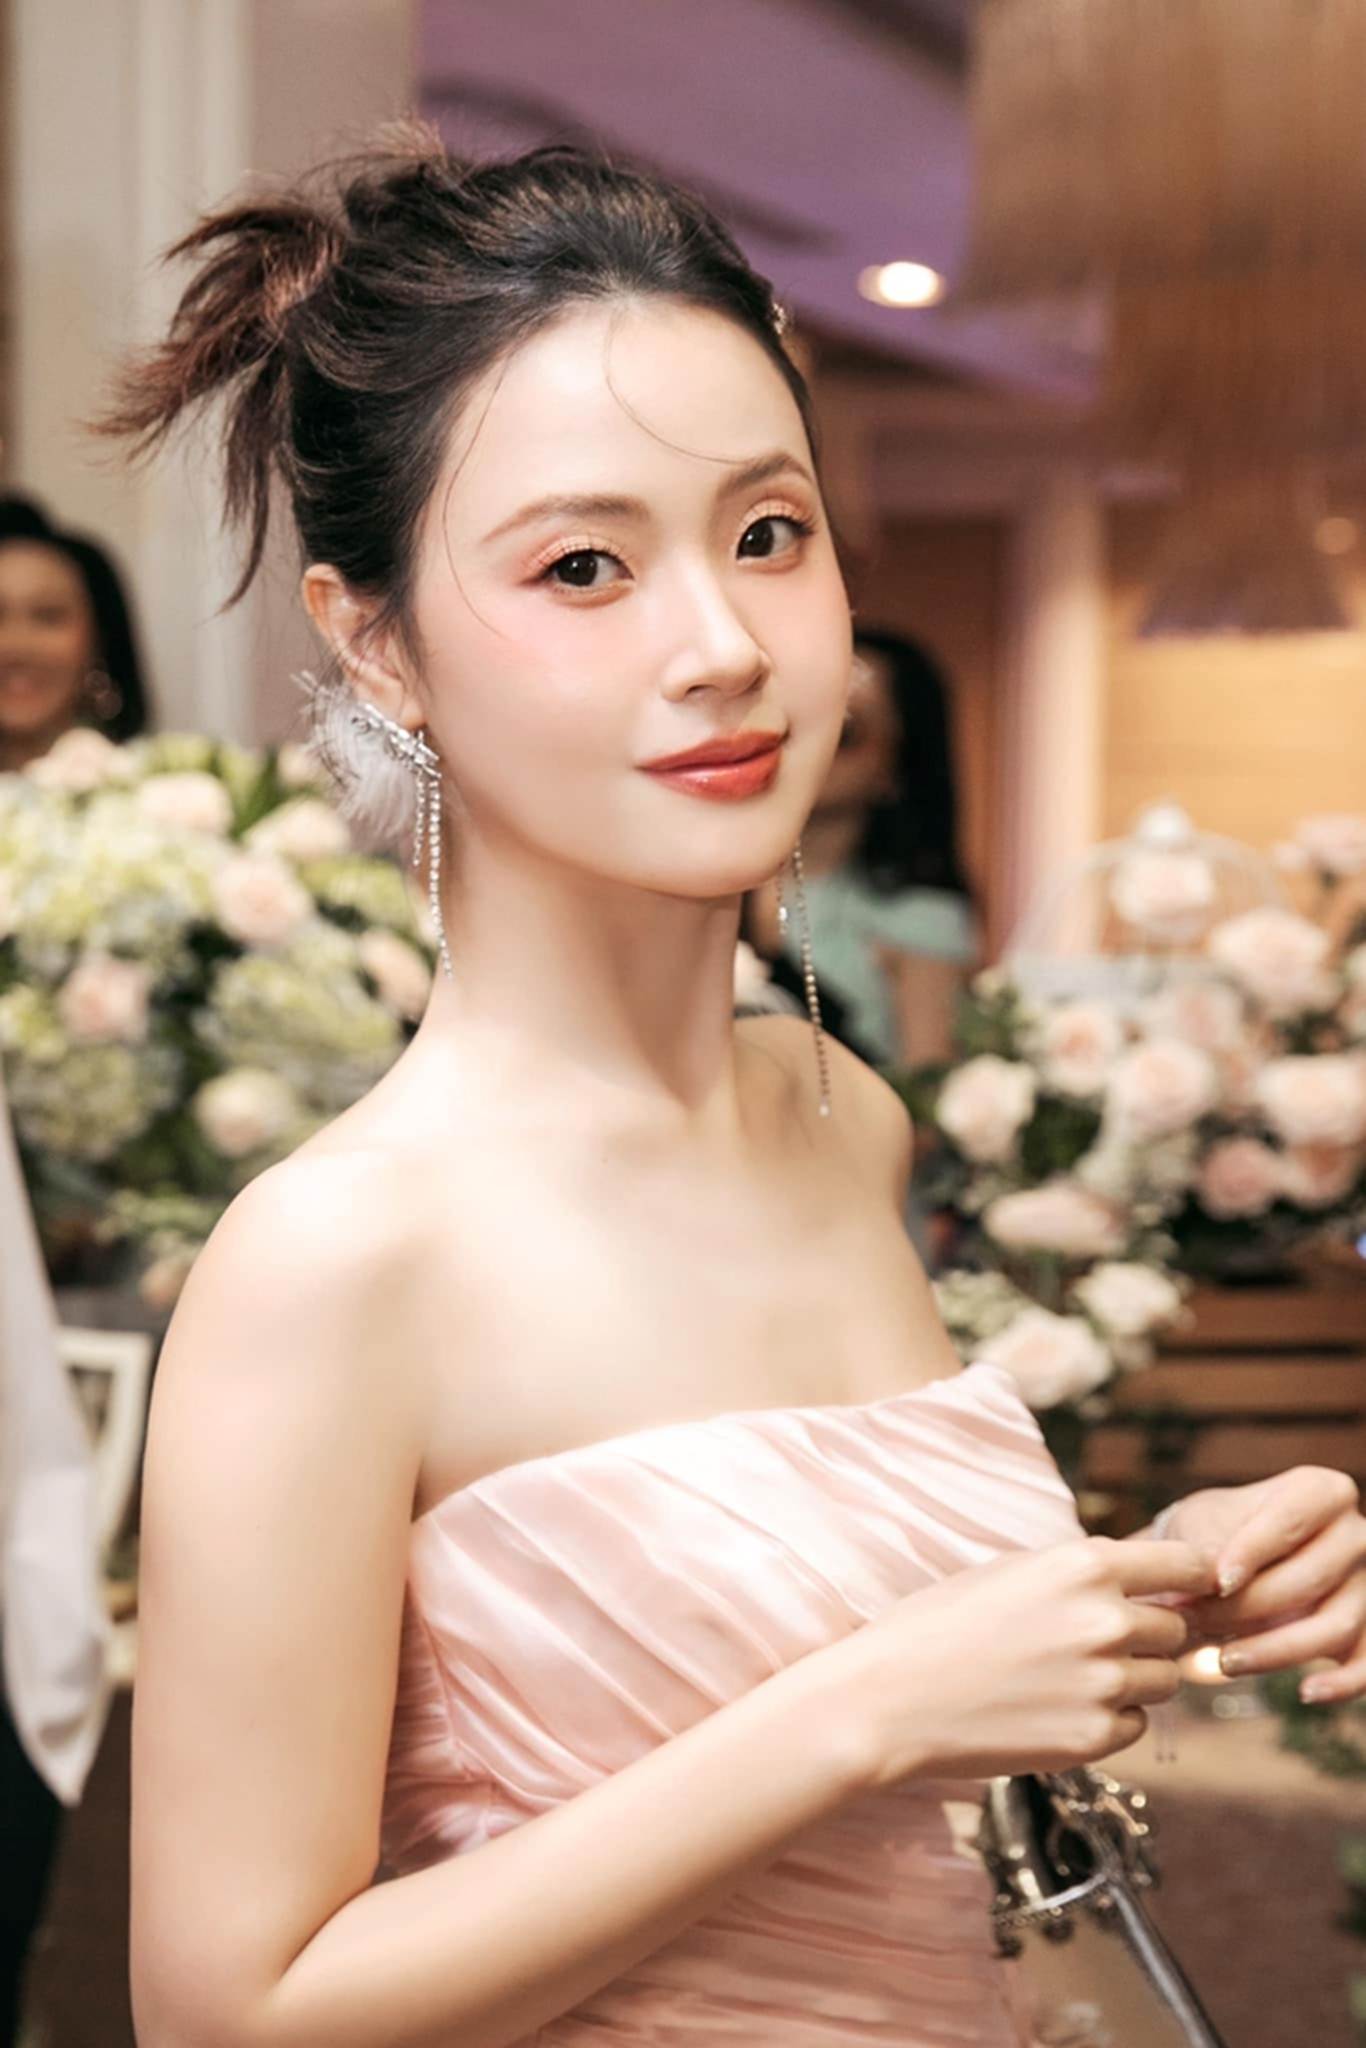 Midu tổ chức lễ cưới với chồng doanh nhân tại Đà Lạt vào ngày mai, khách mời có quy định đặc biệt-1